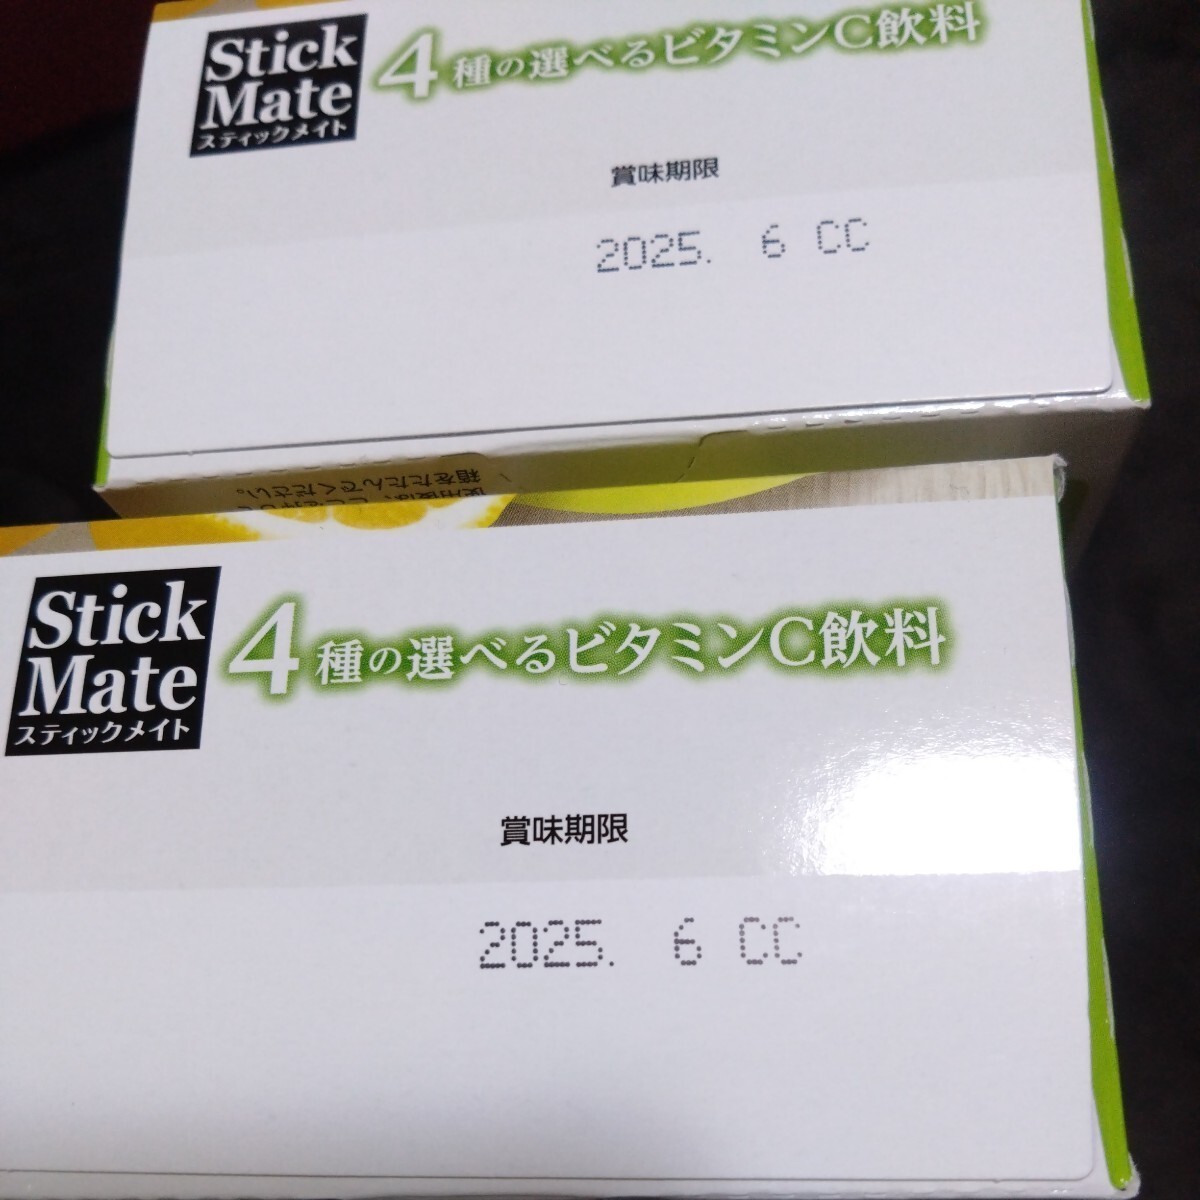  специальная цена #StickMade 4 вид. можно выбрать витамин C напиток 2 коробка [ почтовая доставка поэтому коробка из . делать упаковка,]